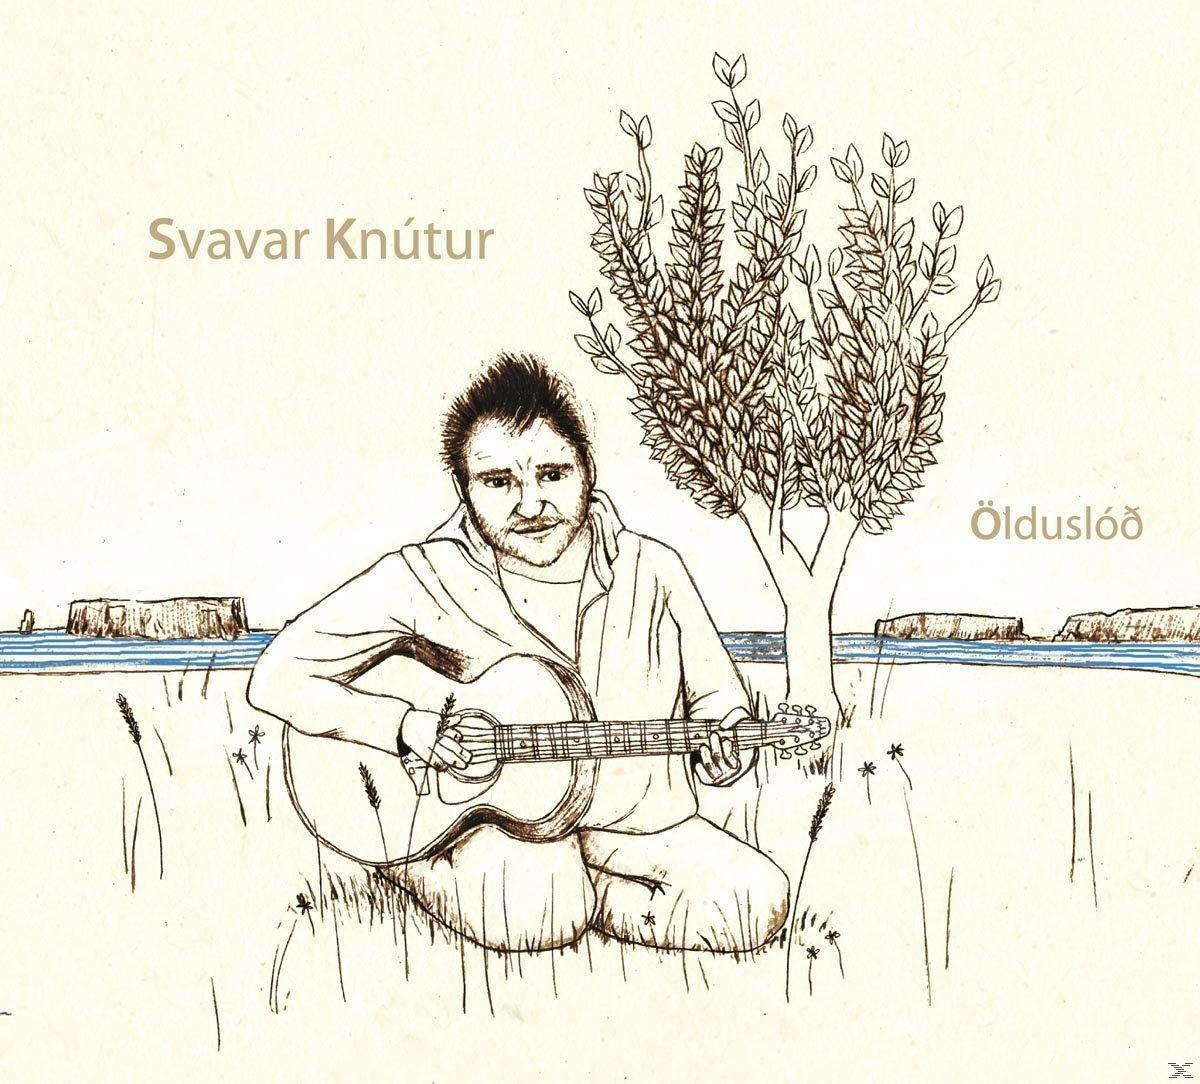 (Vinyl) Svavar - Knútur - Lduslod